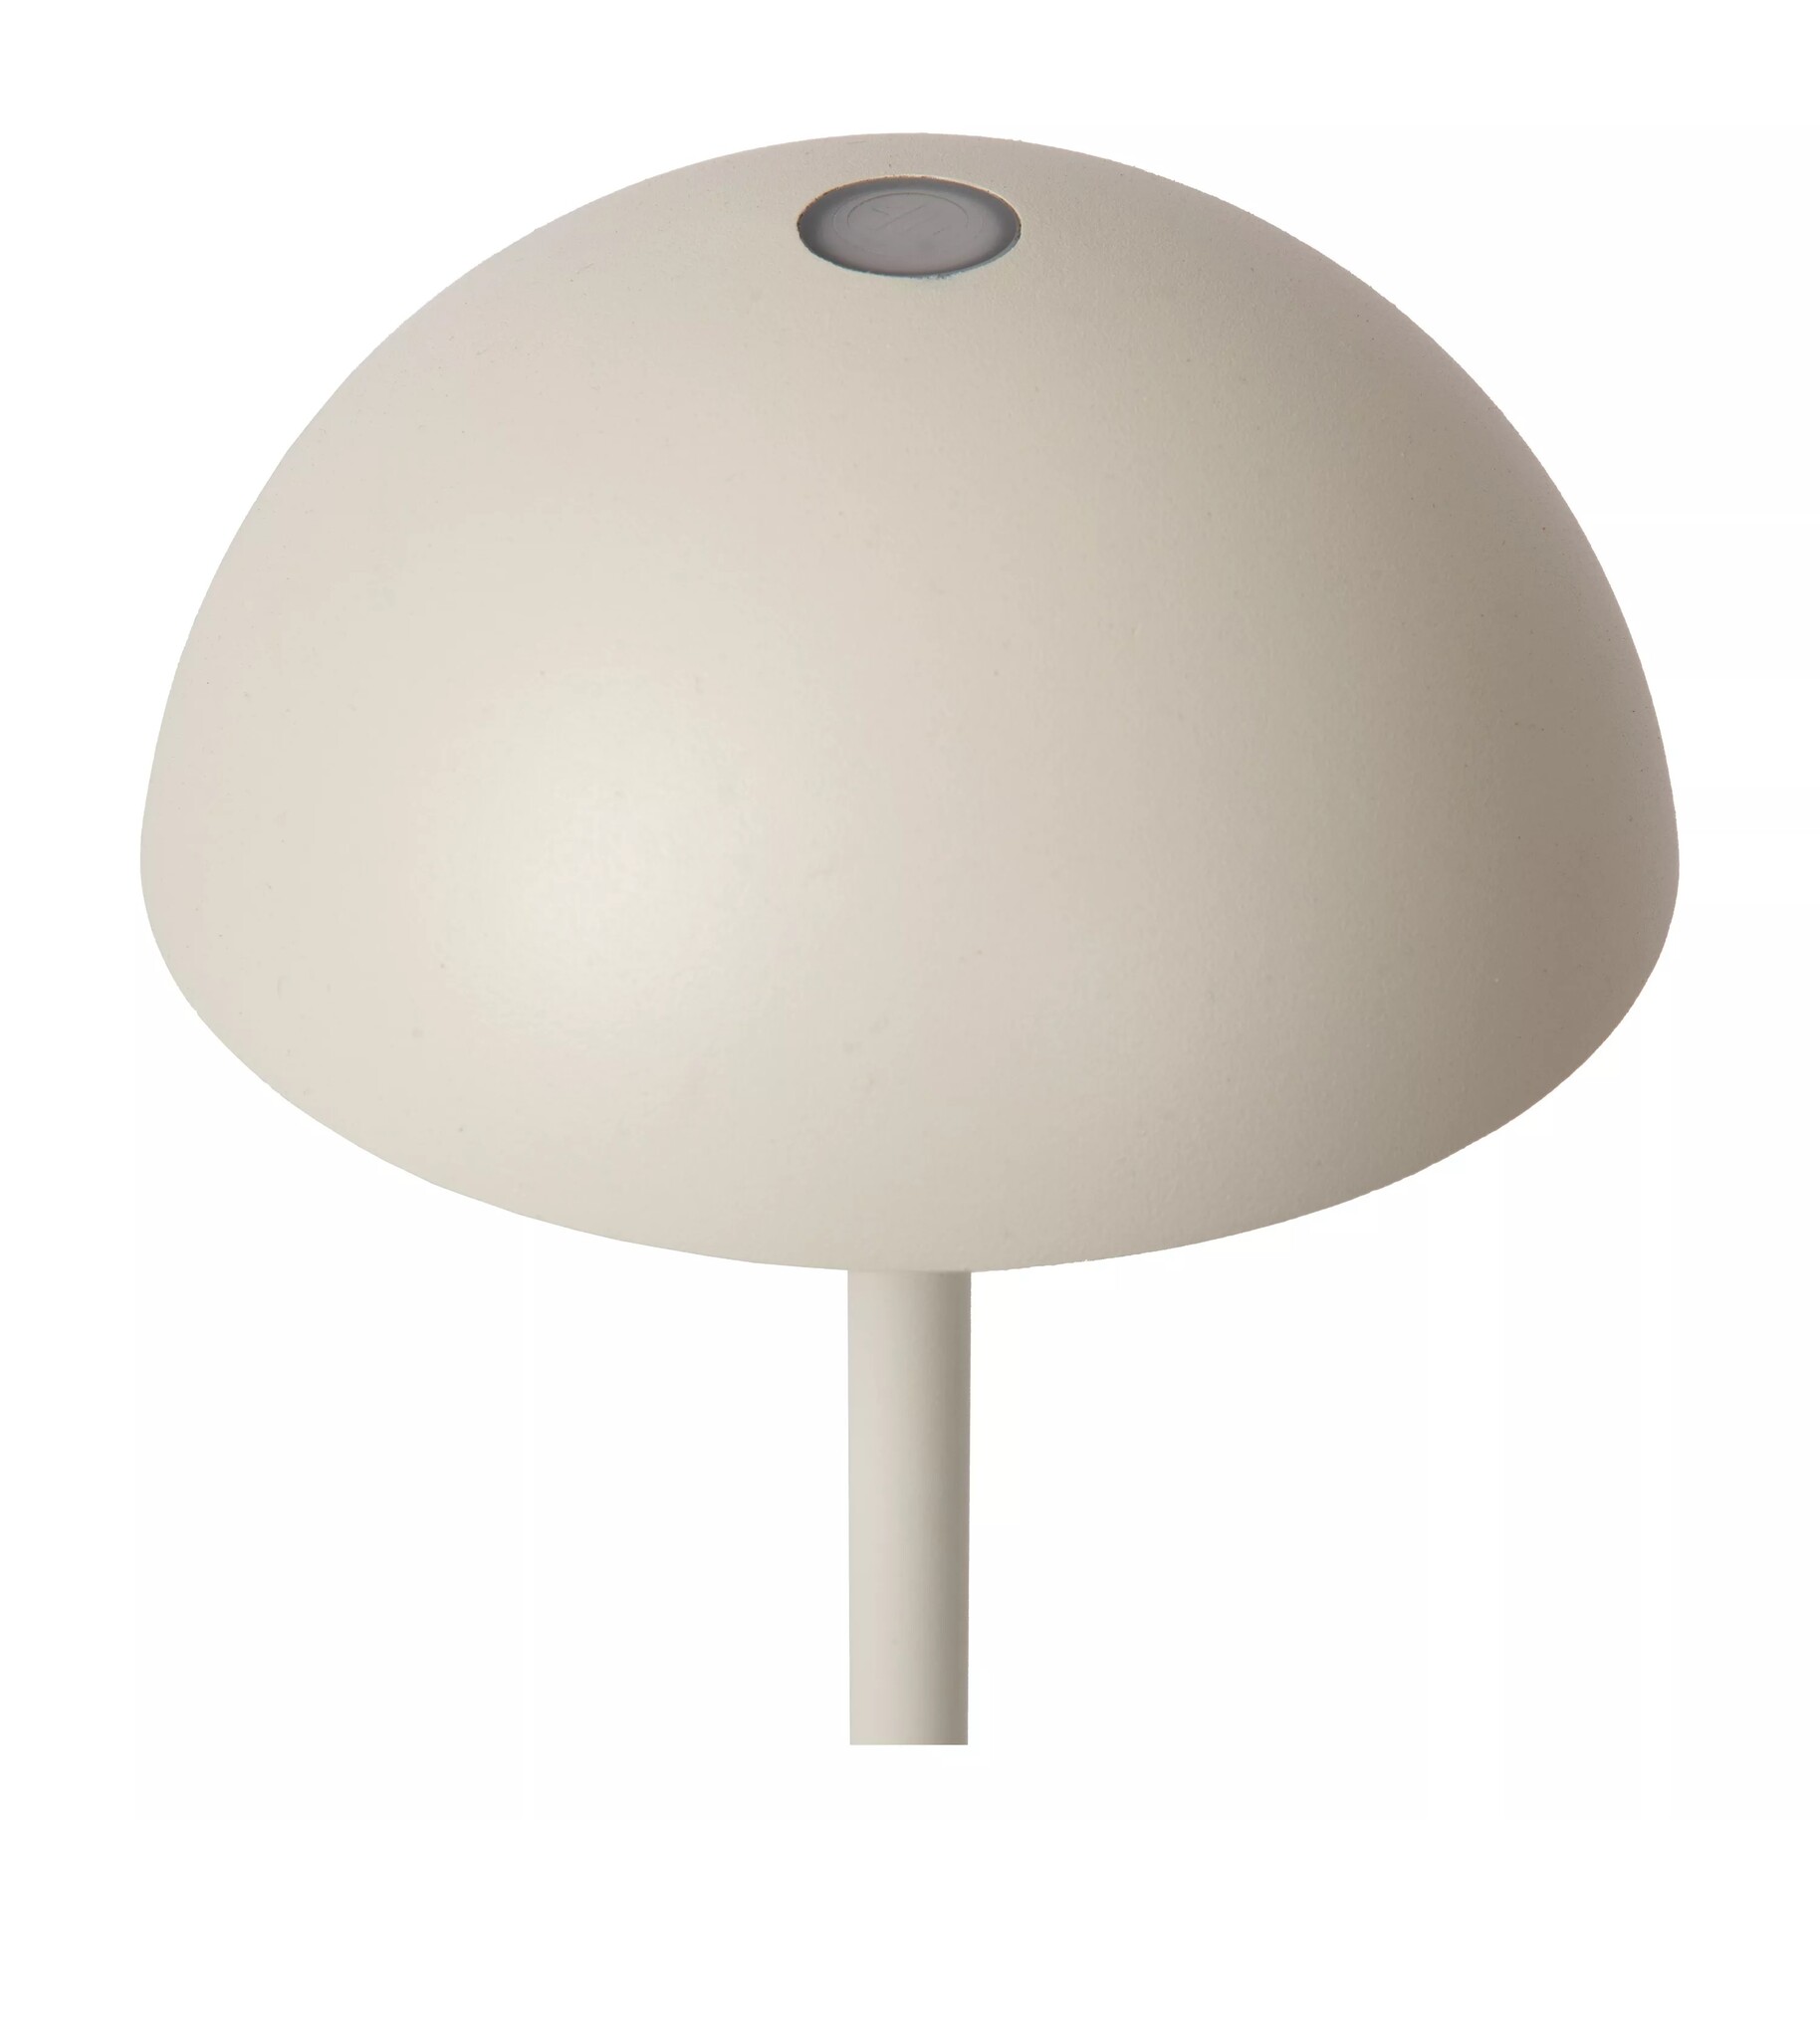 Lámpara de mesa exterior inalámbrica recargable USB blanca regulable 1.5W